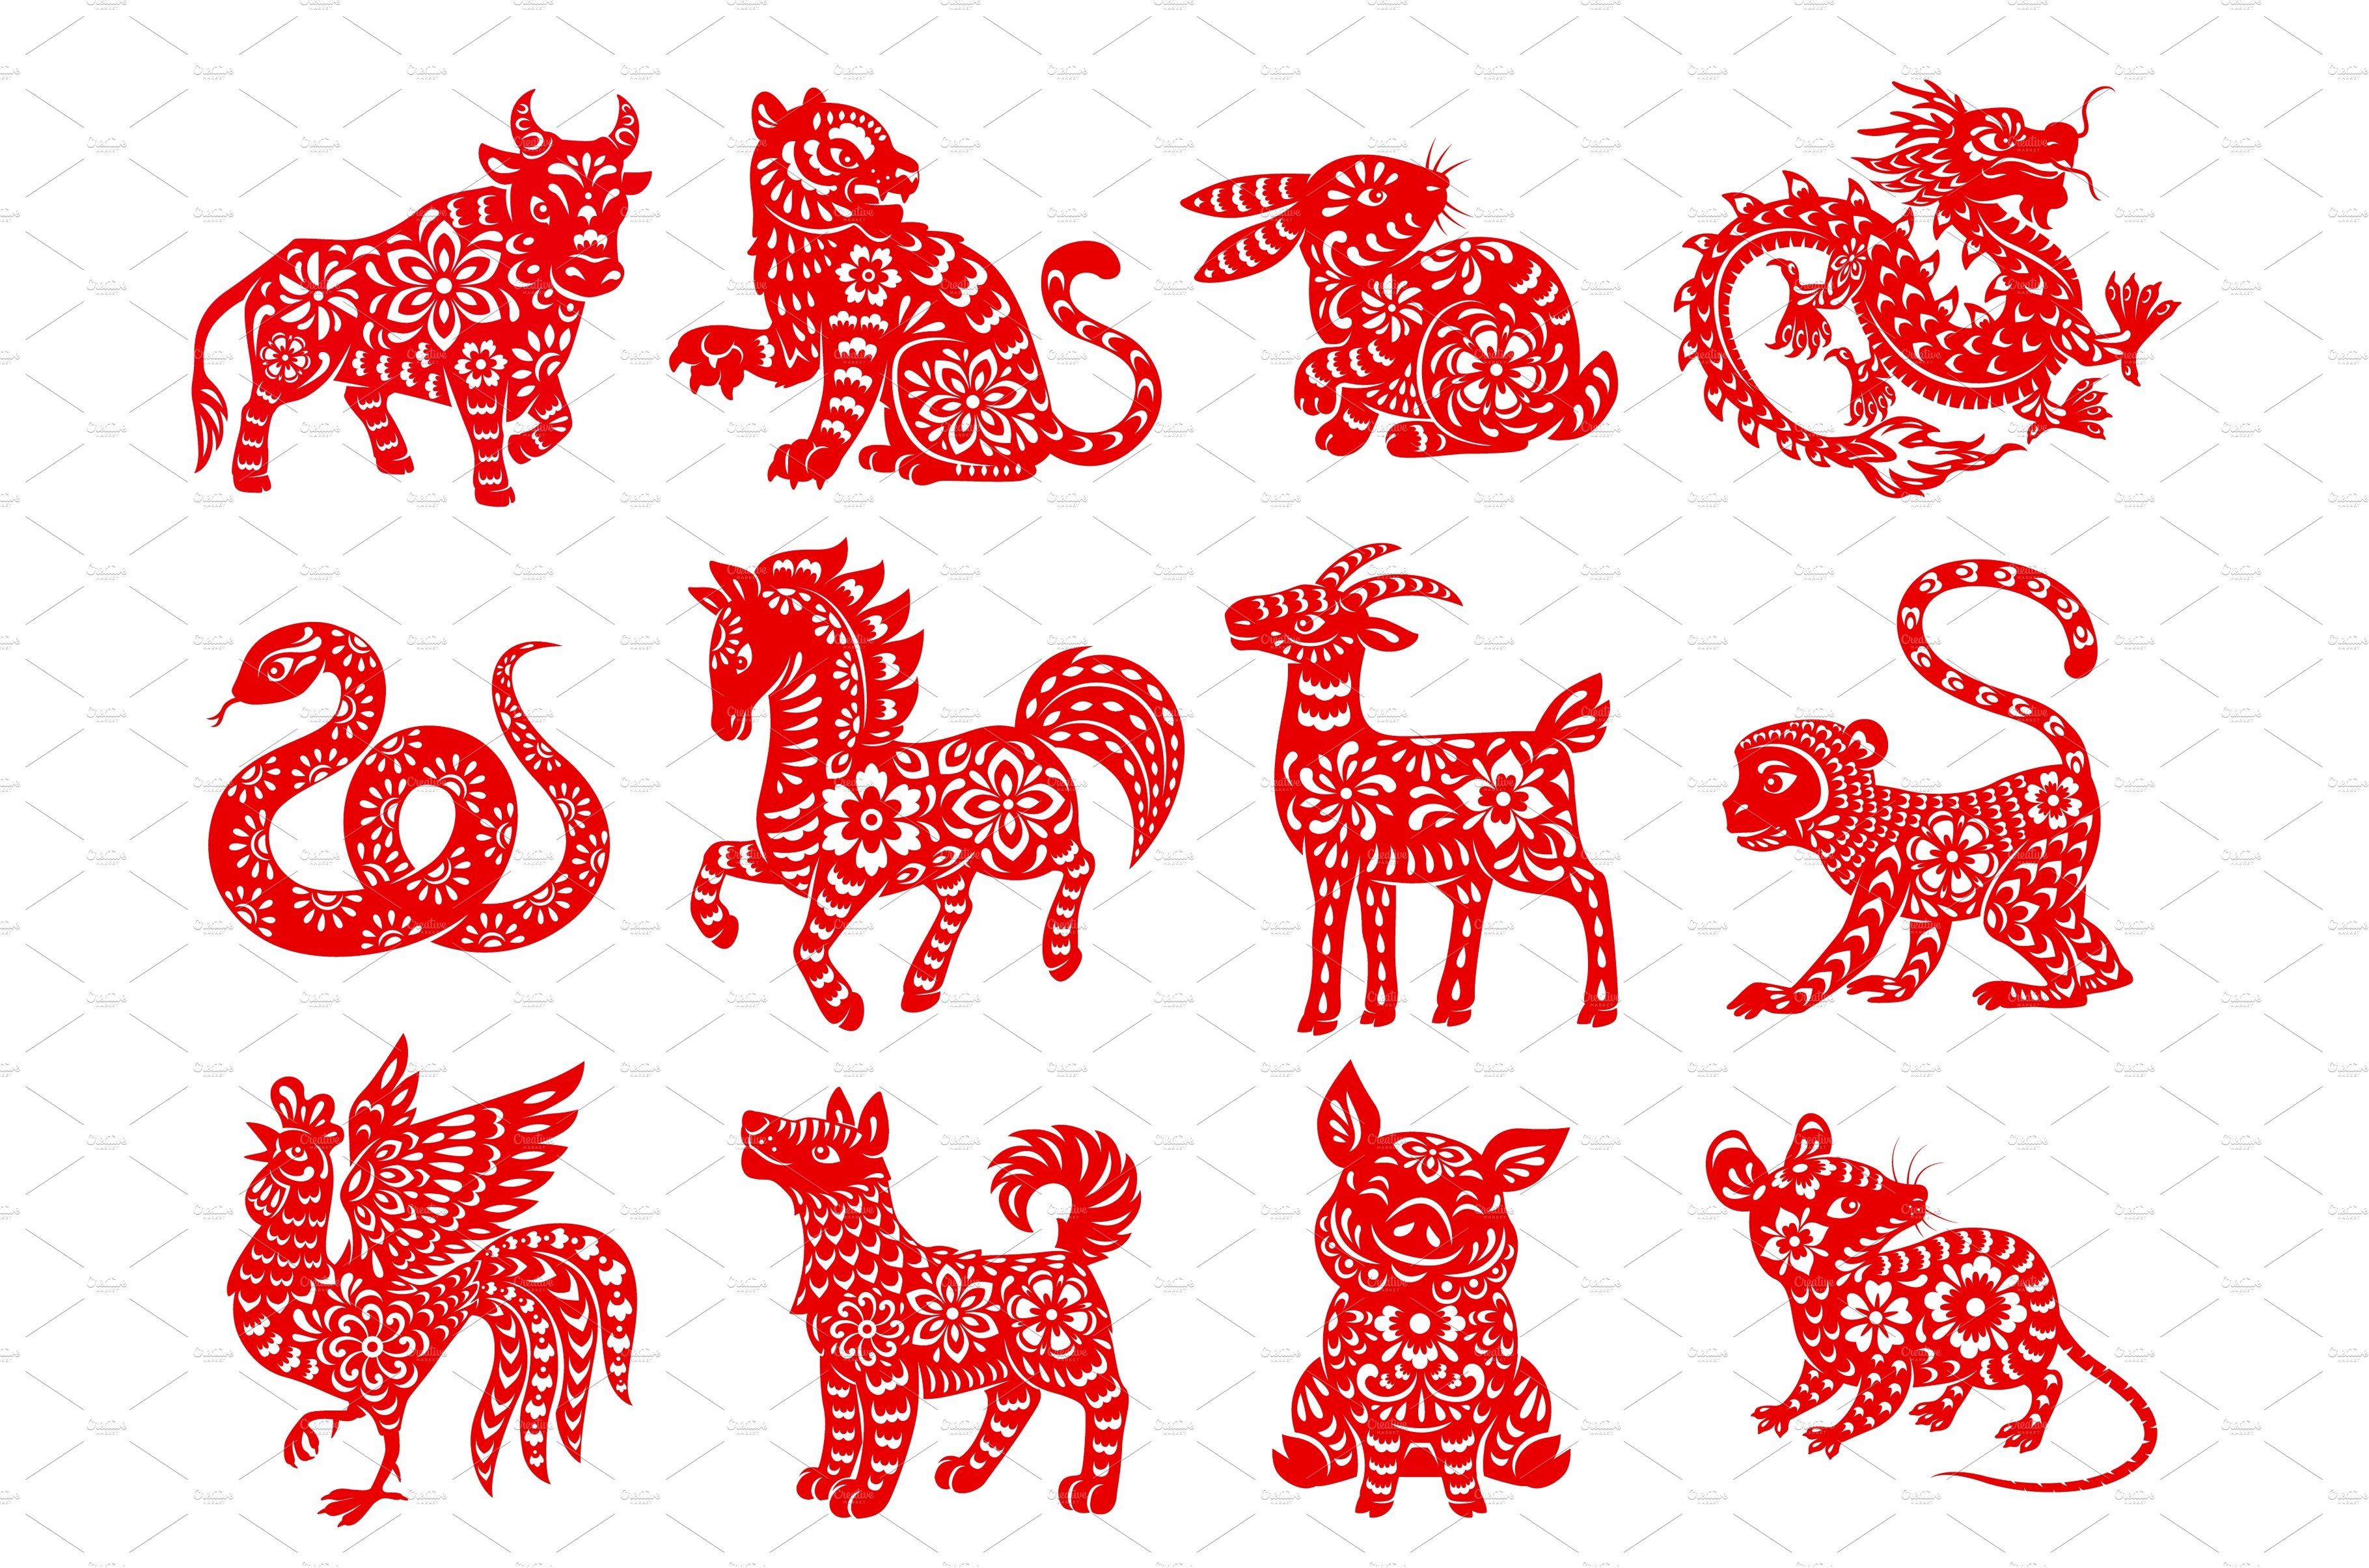 Chinese Zodiac horoscope animals cover image.